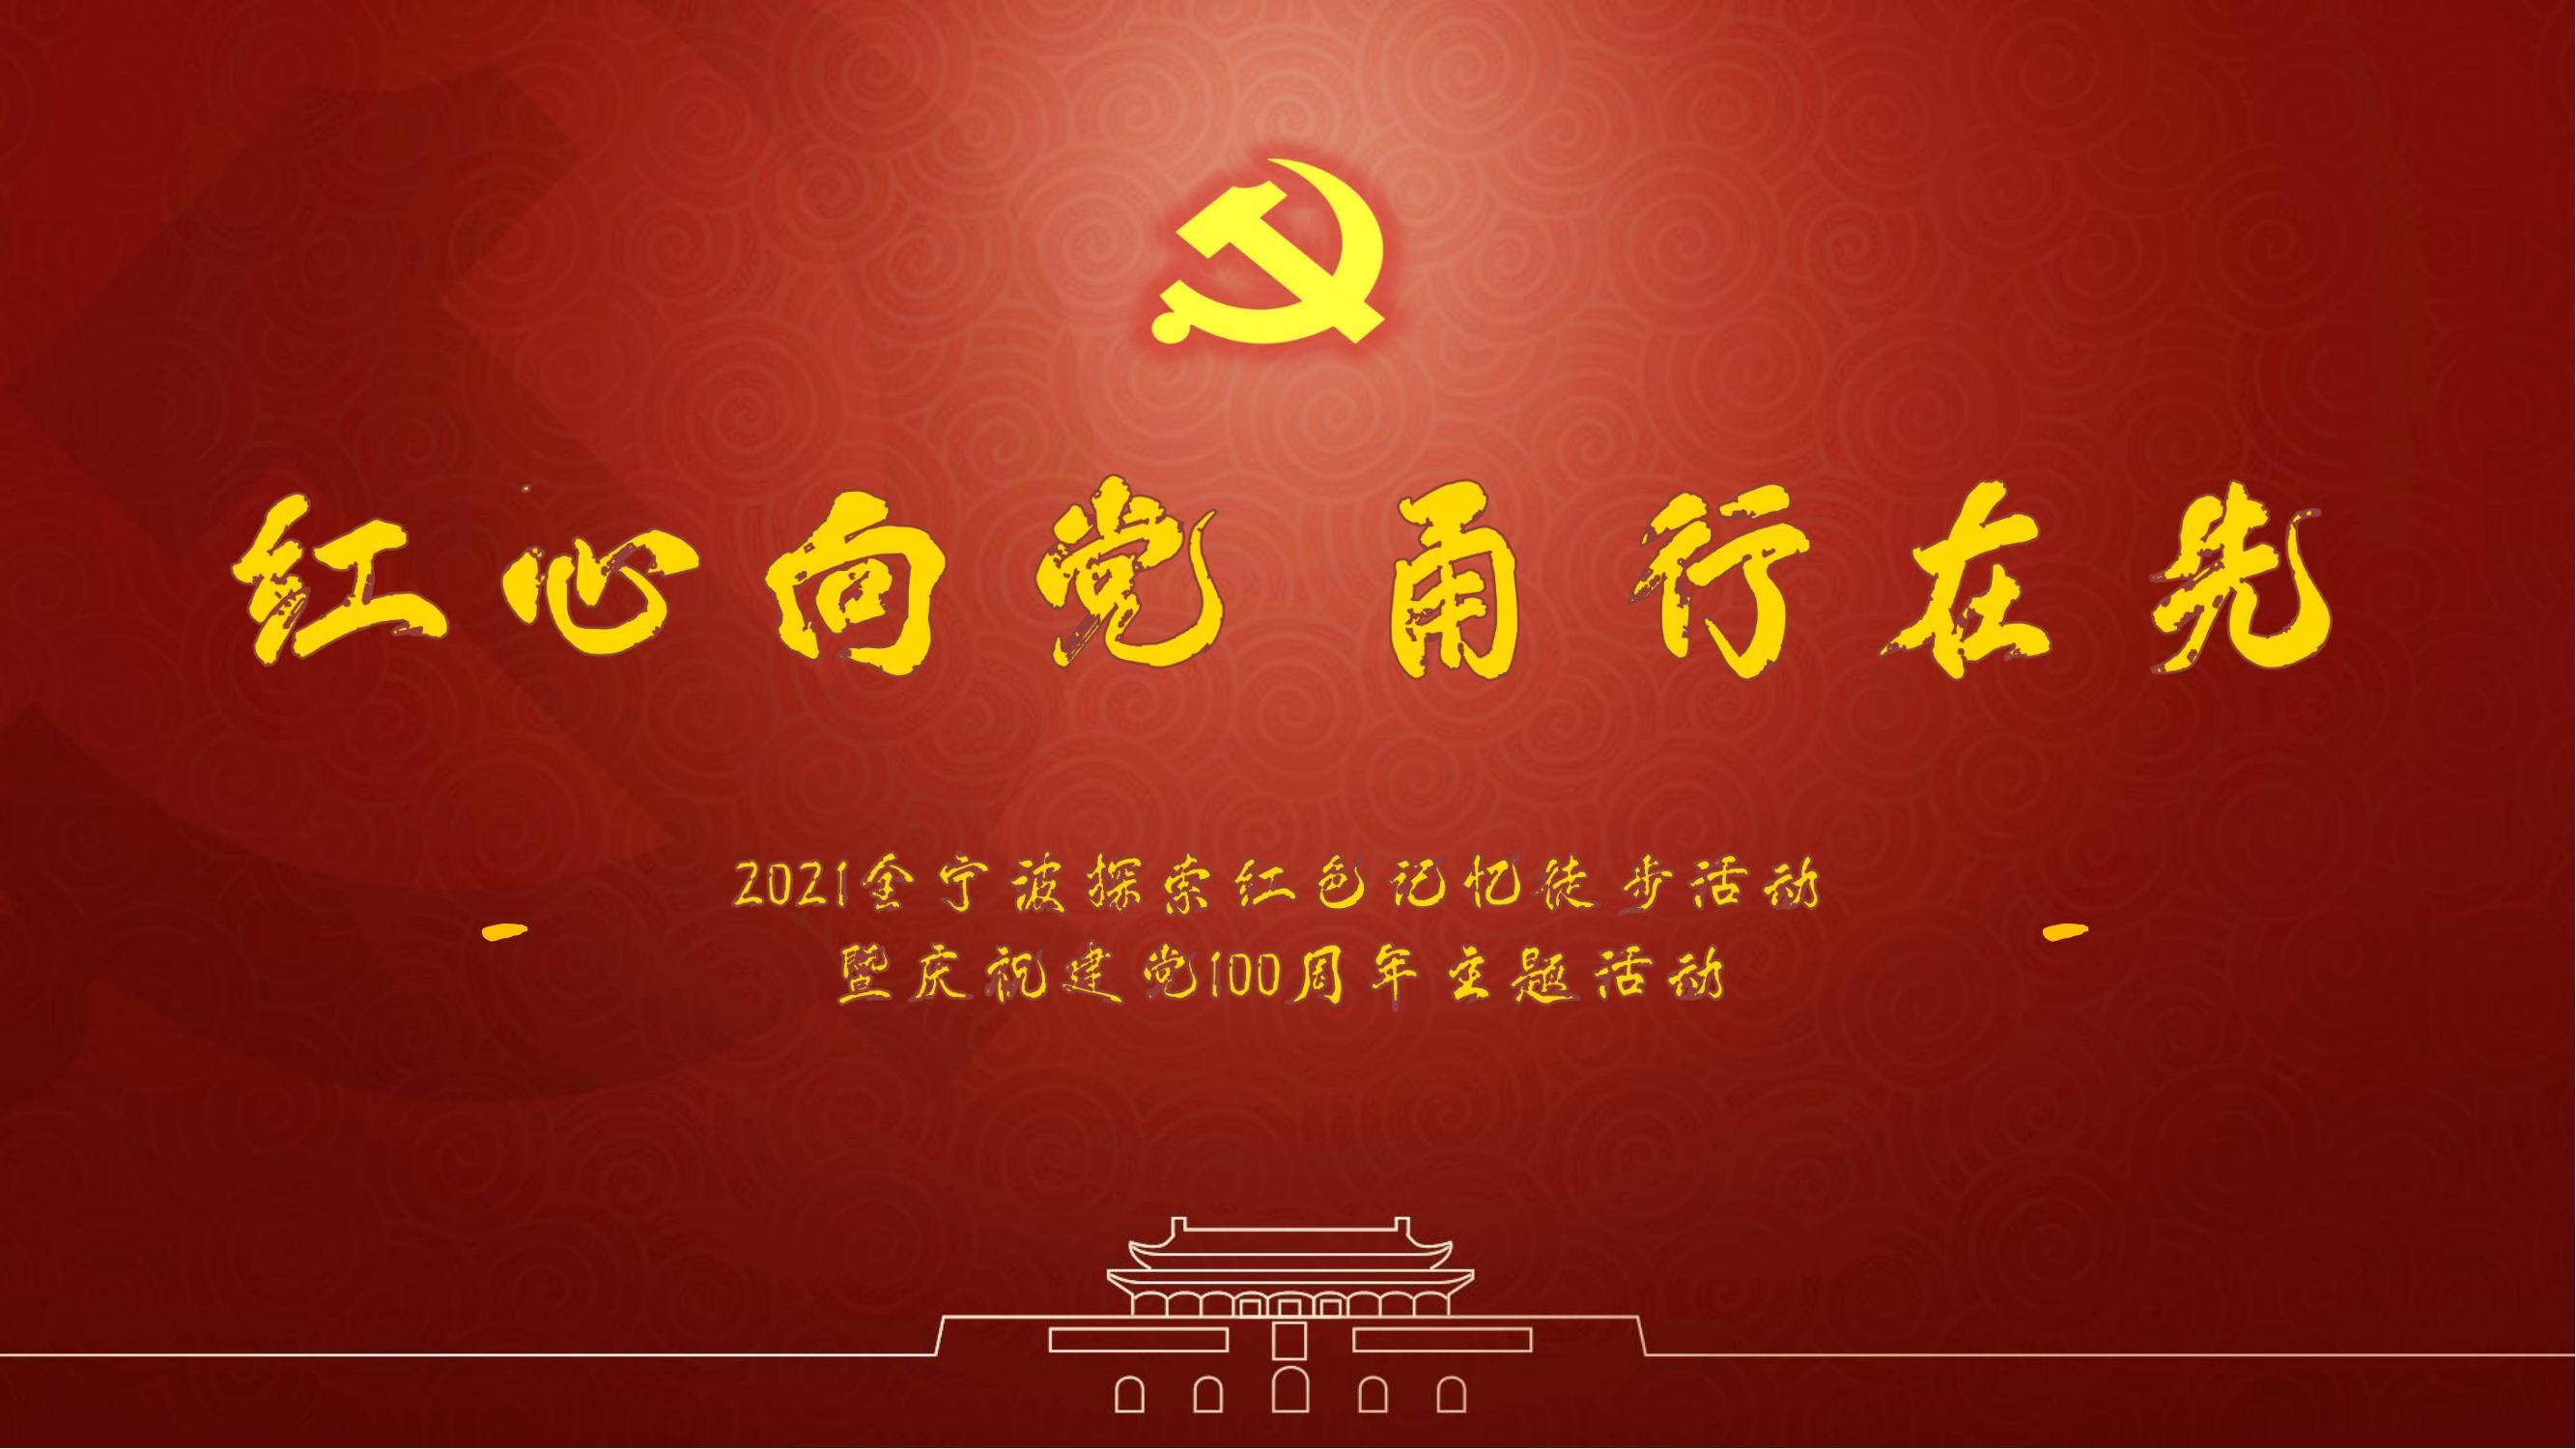 全宁波探寻红色记忆徒步活动暨庆祝建党100周年主题活动策划方案